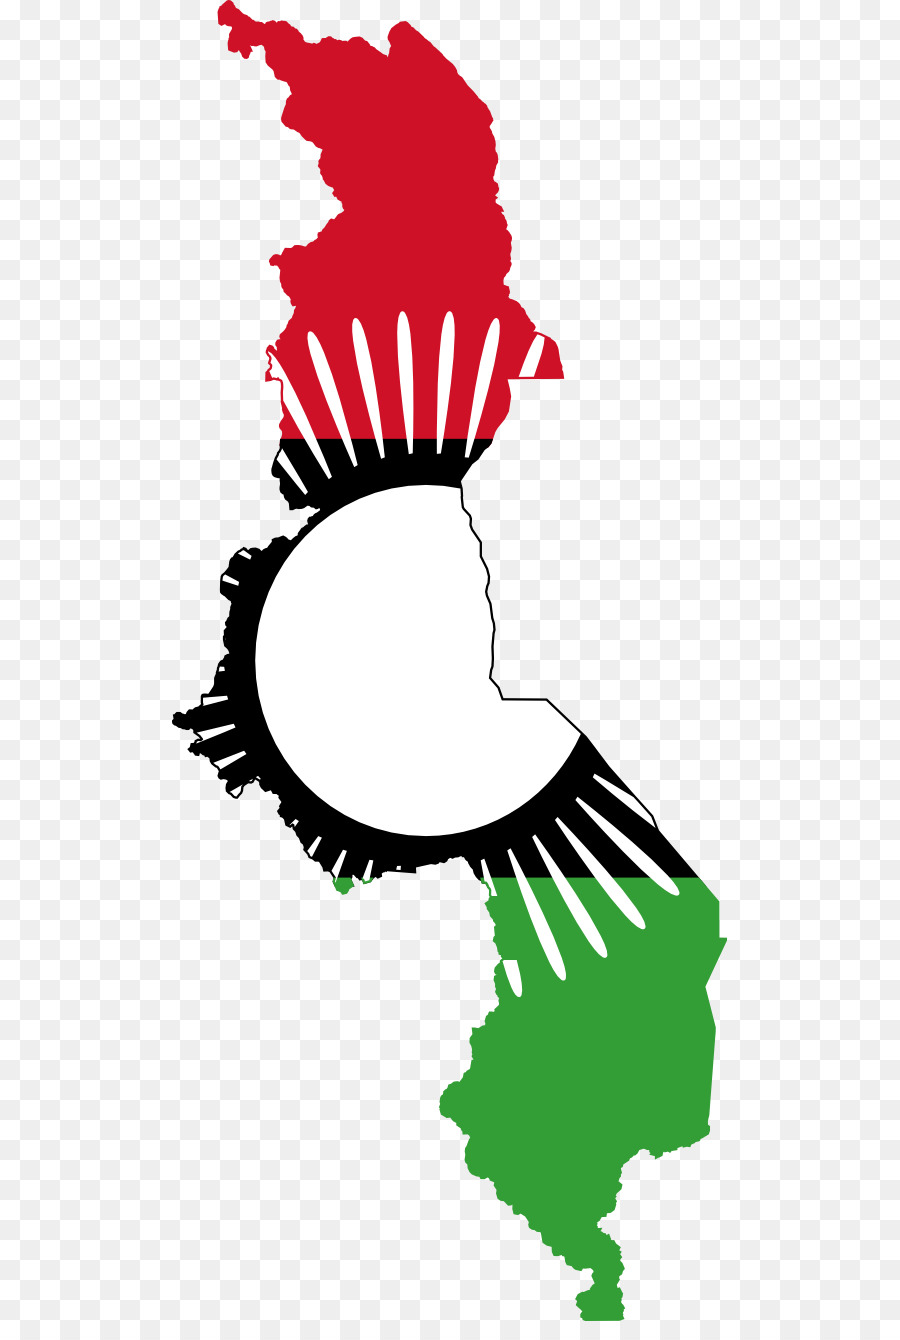 ธงชาติของมาลาวี Name，มาลาวี Name PNG